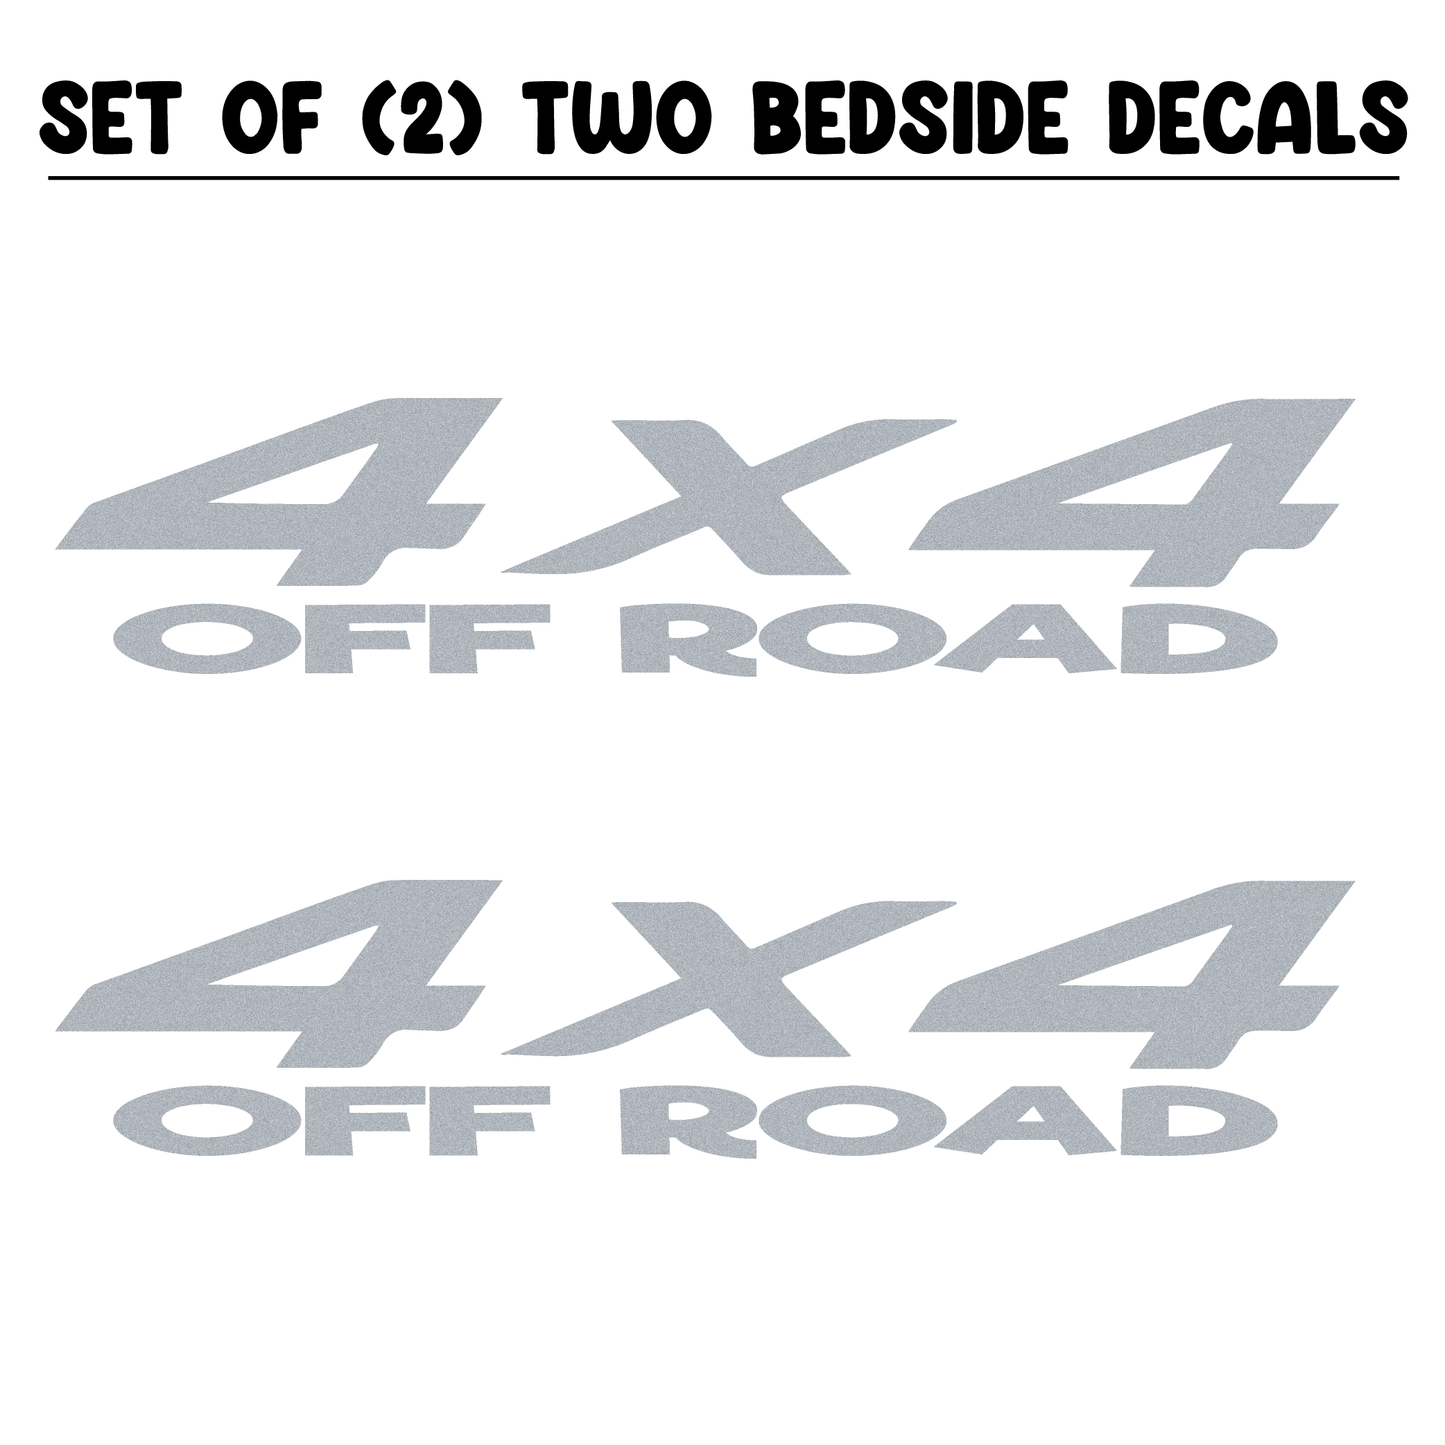 Shop Vinyl Design RAM Trucks 4 x 4 Off Road Replacement Bedside Decals #11 Vehicle decal 001 Silver Metallic Shop Vinyl Design decals stickers